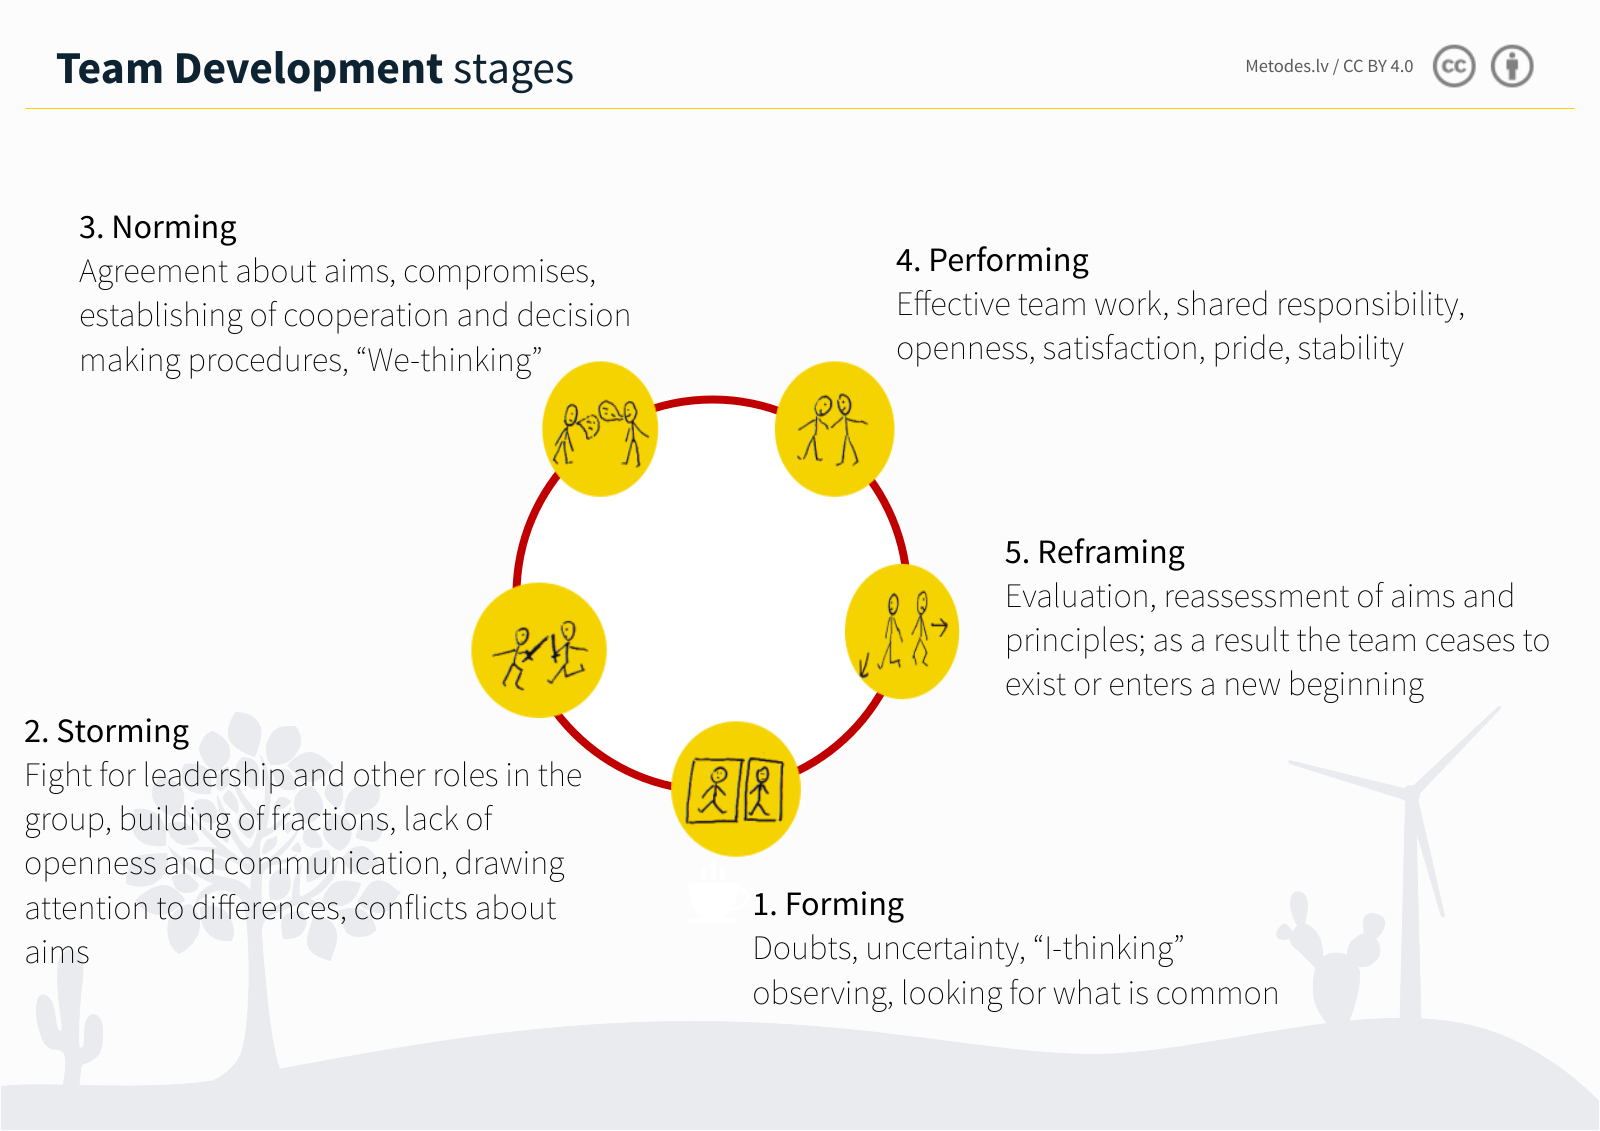 Team development stages